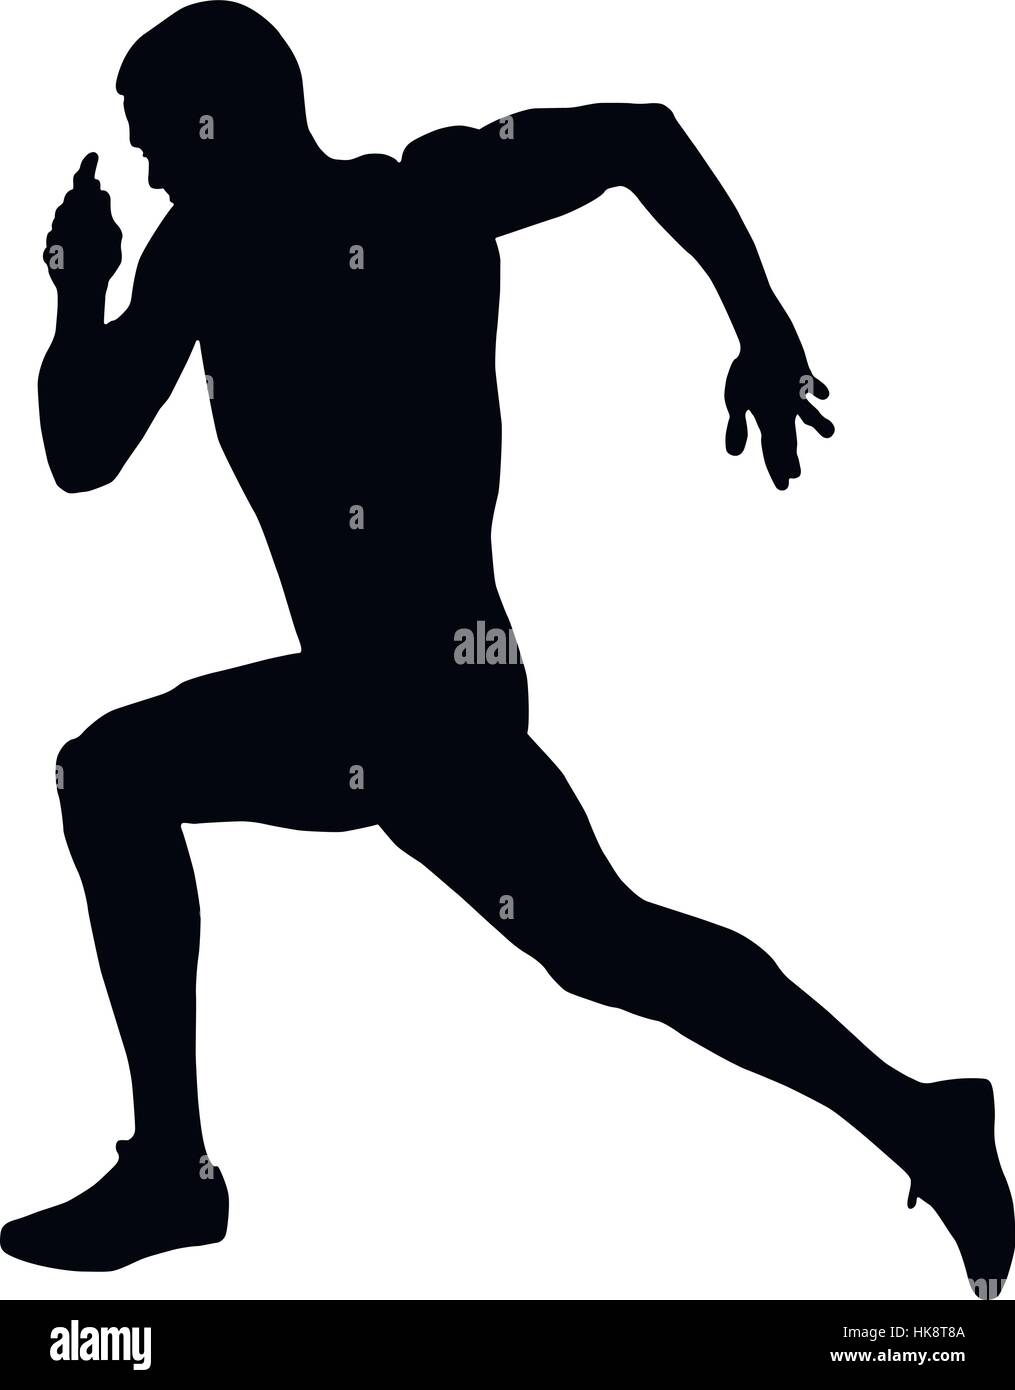 speed running muscular athlete runner black silhouette Stock Vector